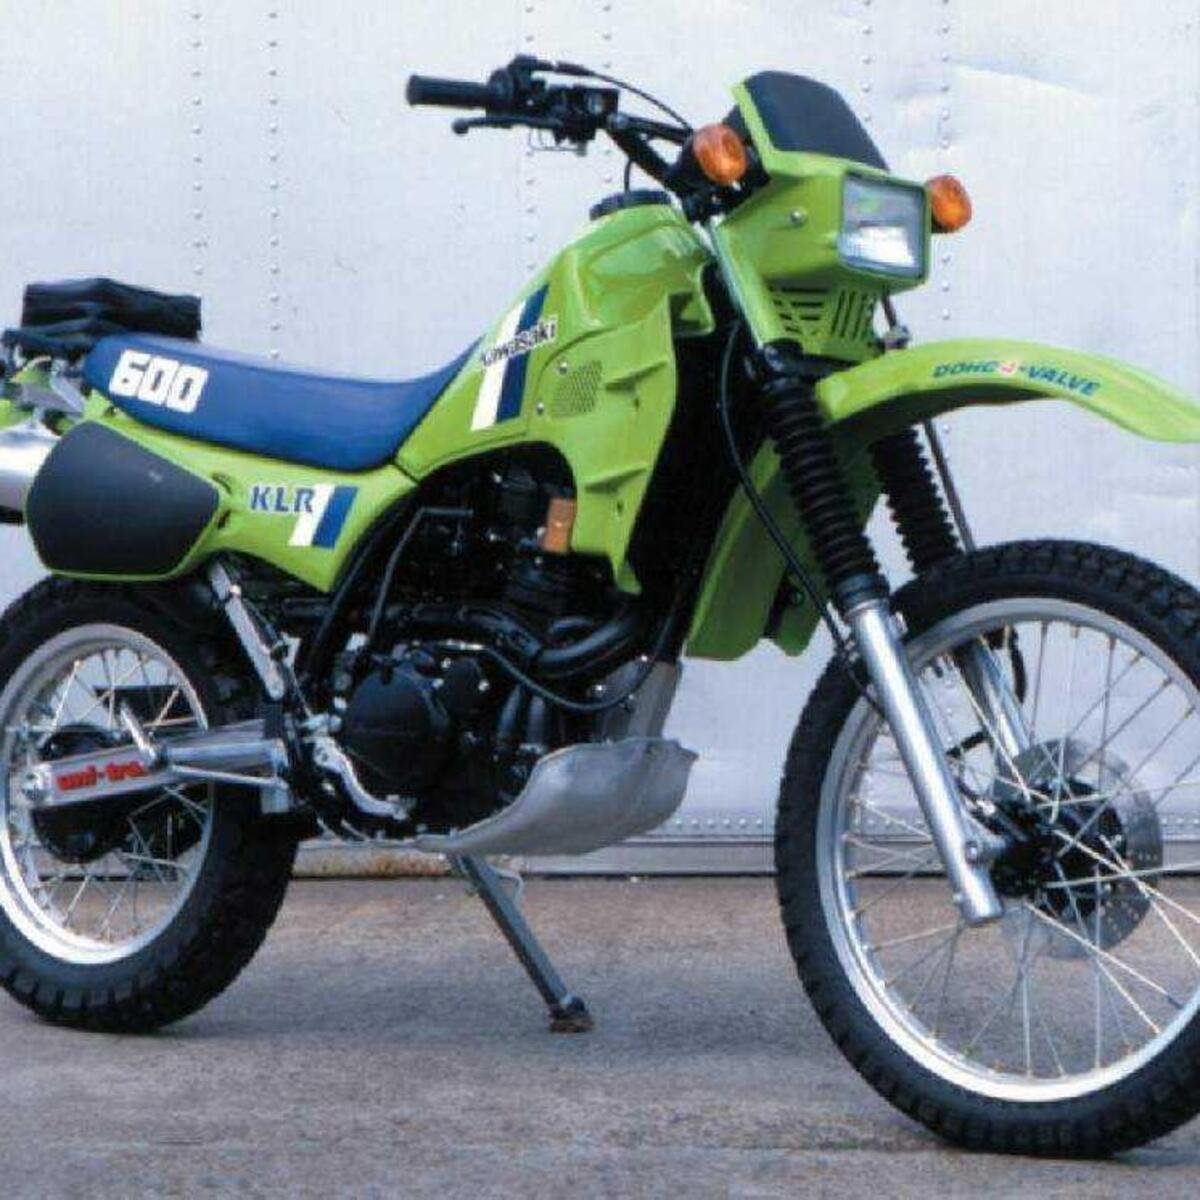 Kawasaki KLR 600 B (1985 - 89)